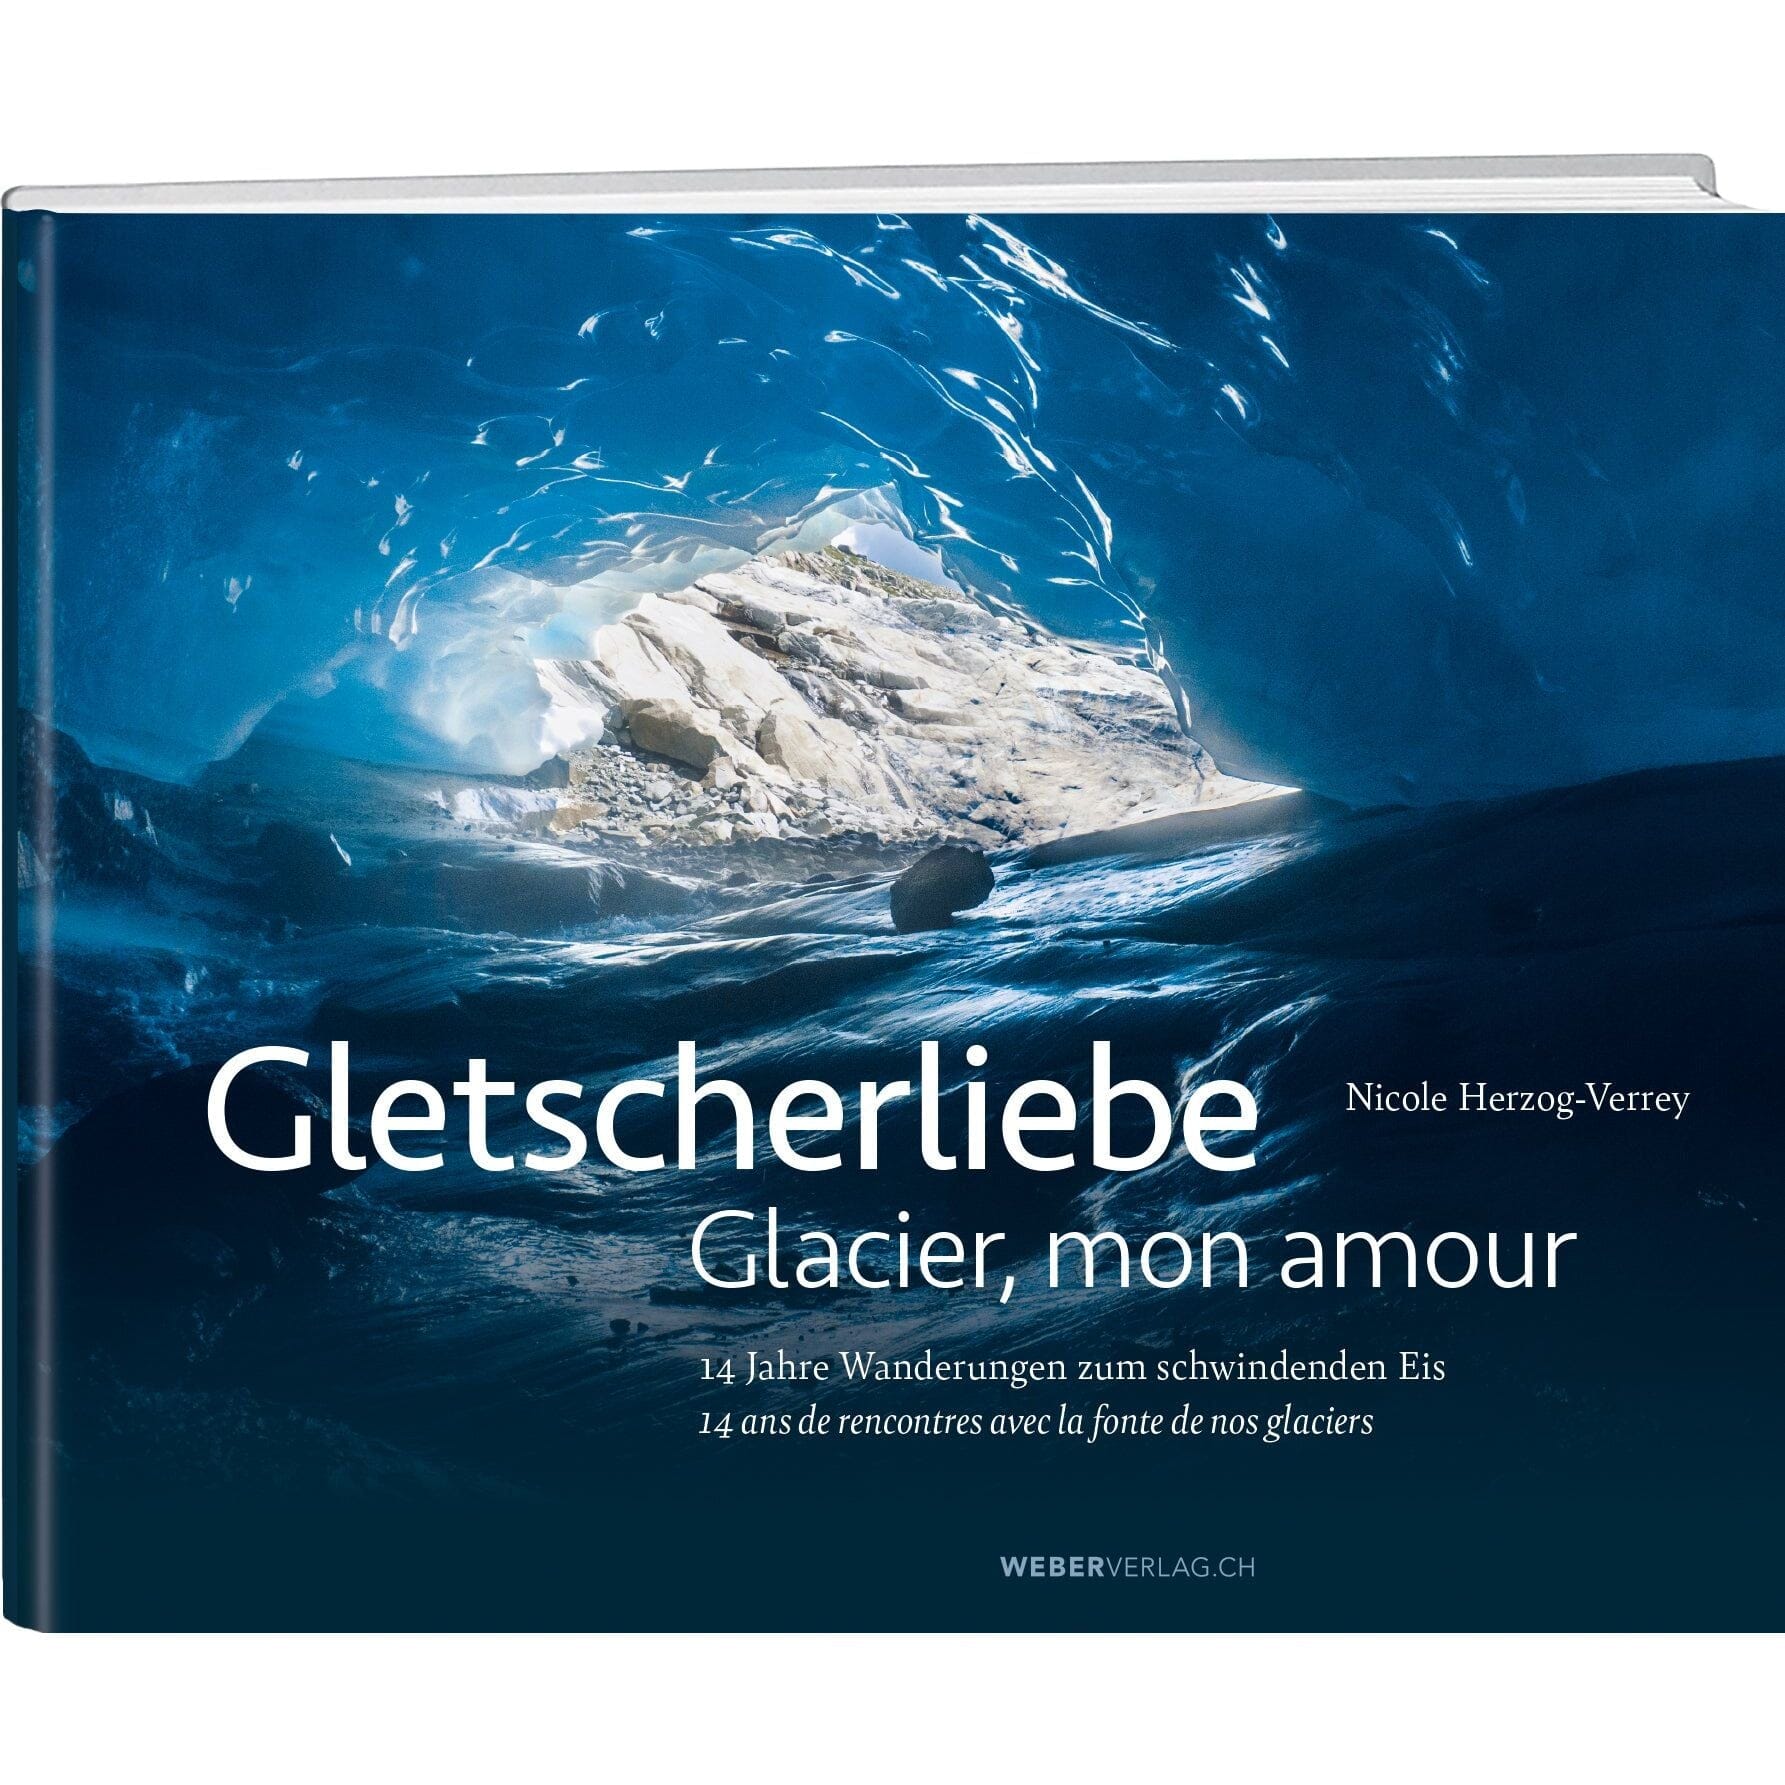 GLETSCHERLIEBE Weber Verlag AG 